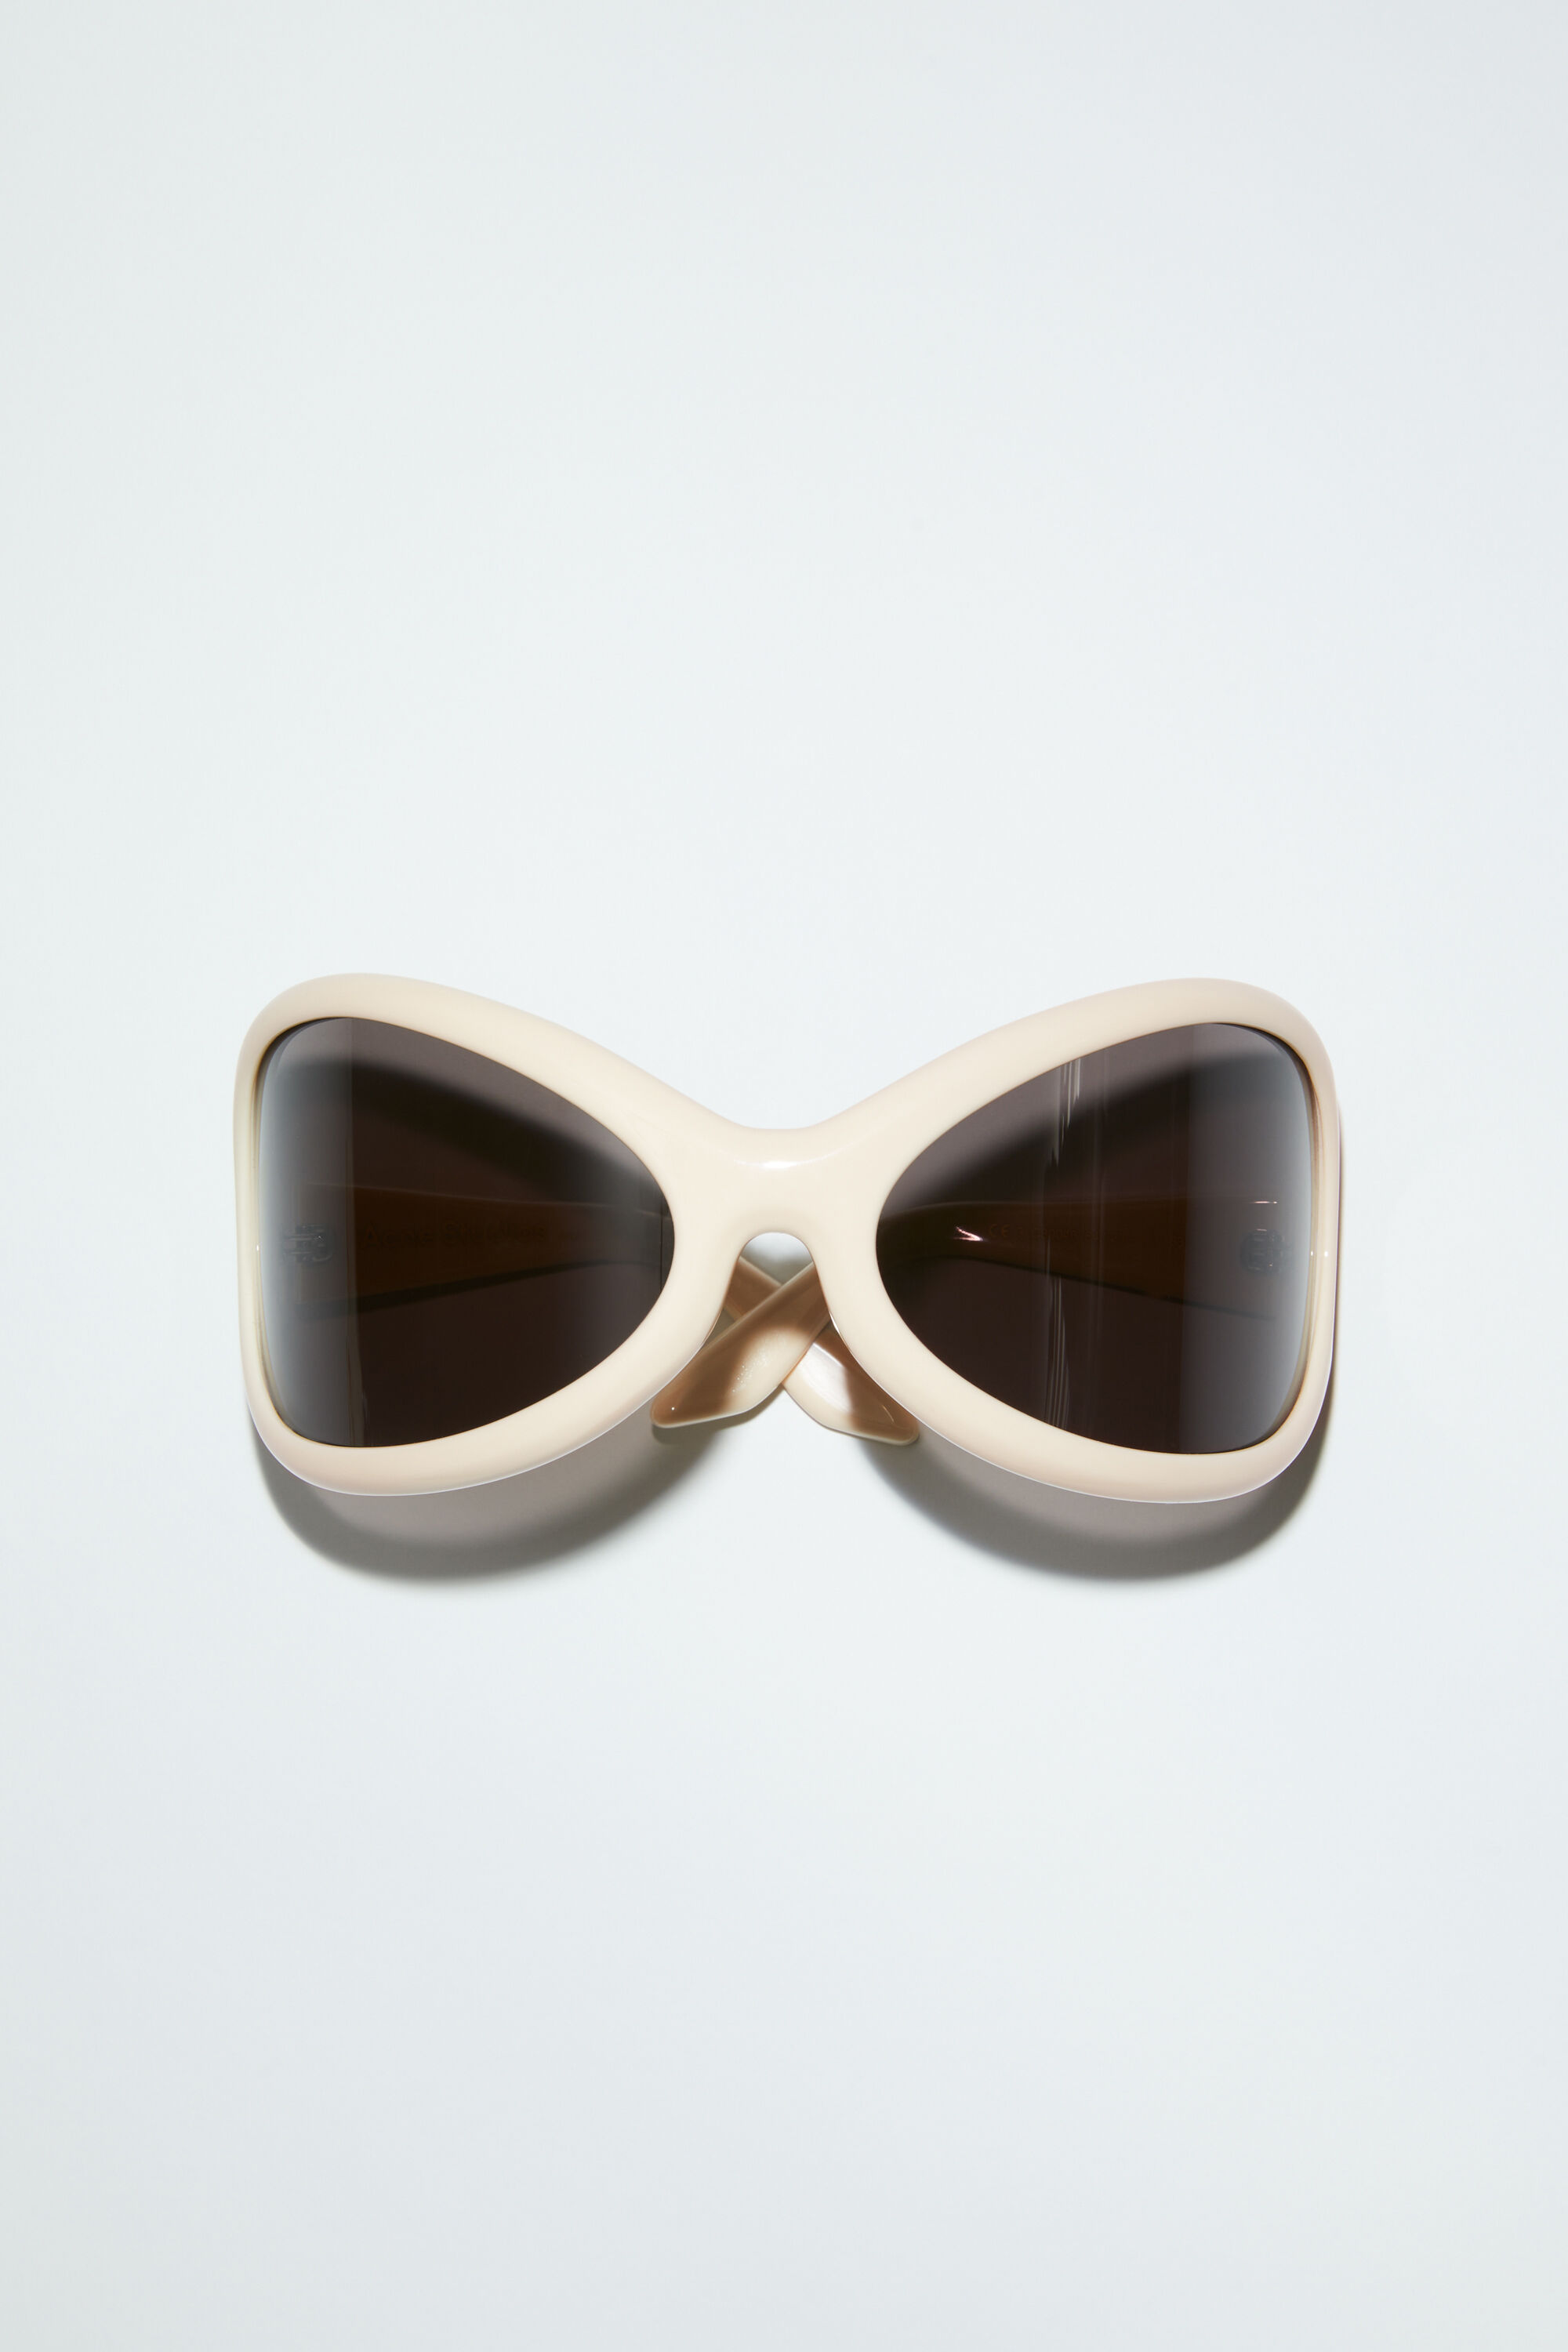 Acne Studios sunglasses サングラスユニセックス用ですかね